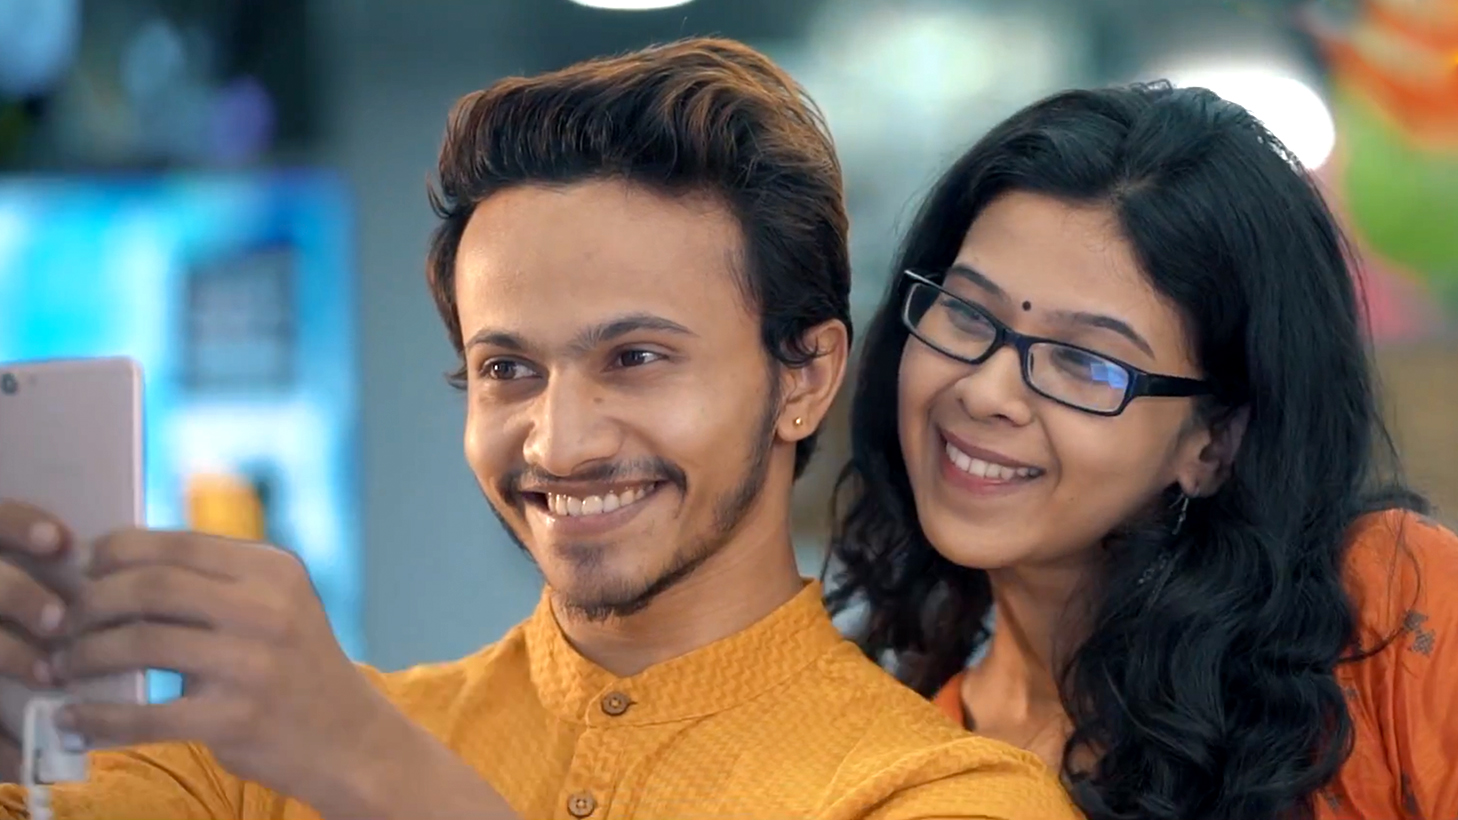 nirman chowdhury - kohinoor electronics ad